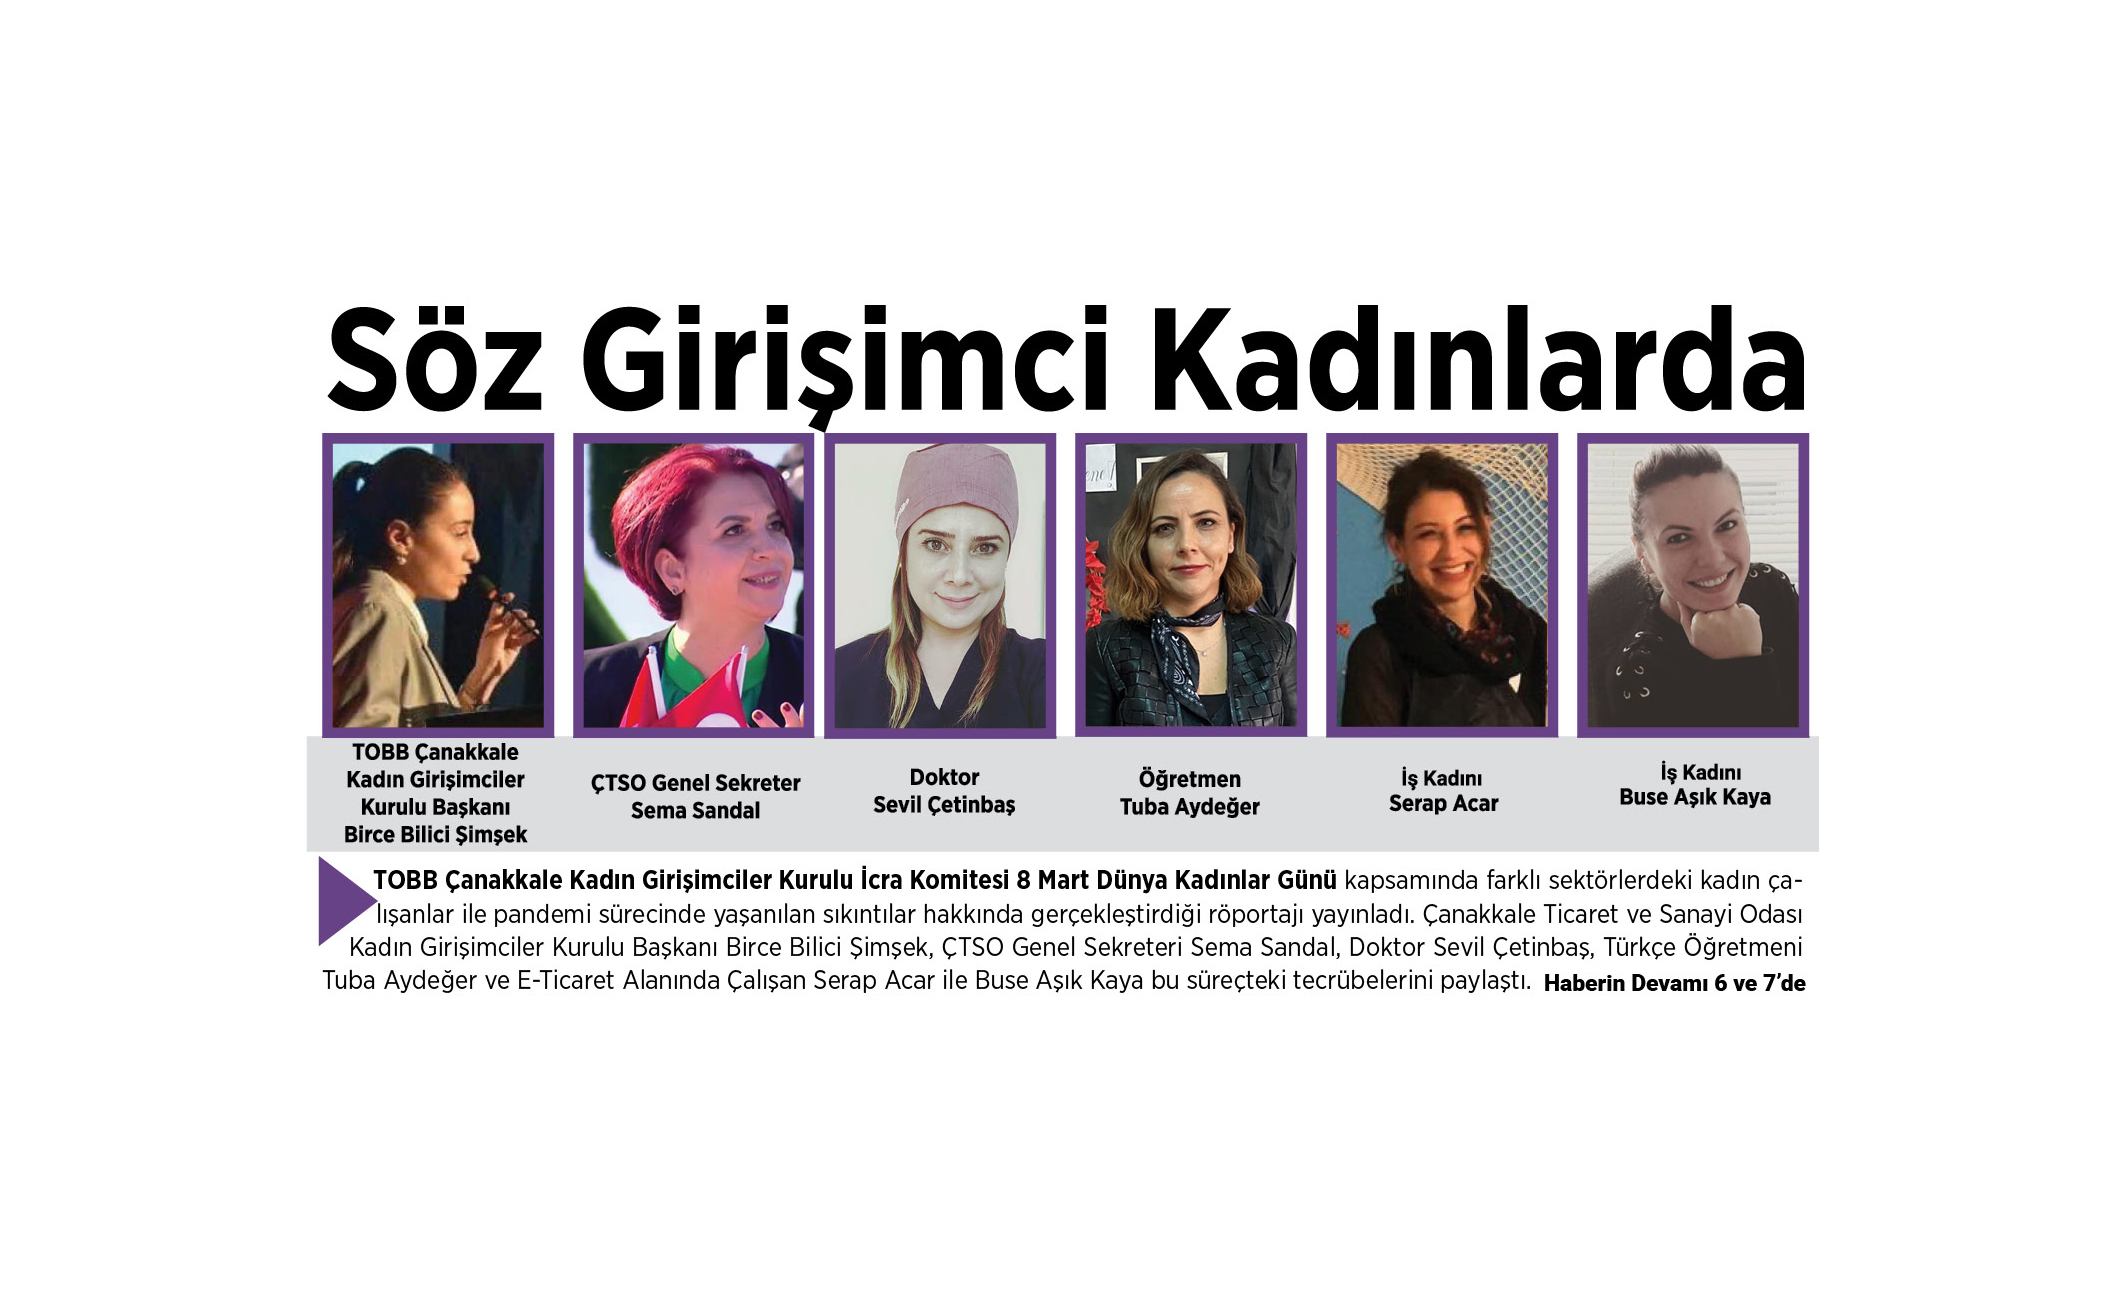 TOBB Çanakkale Kadın Girişimciler